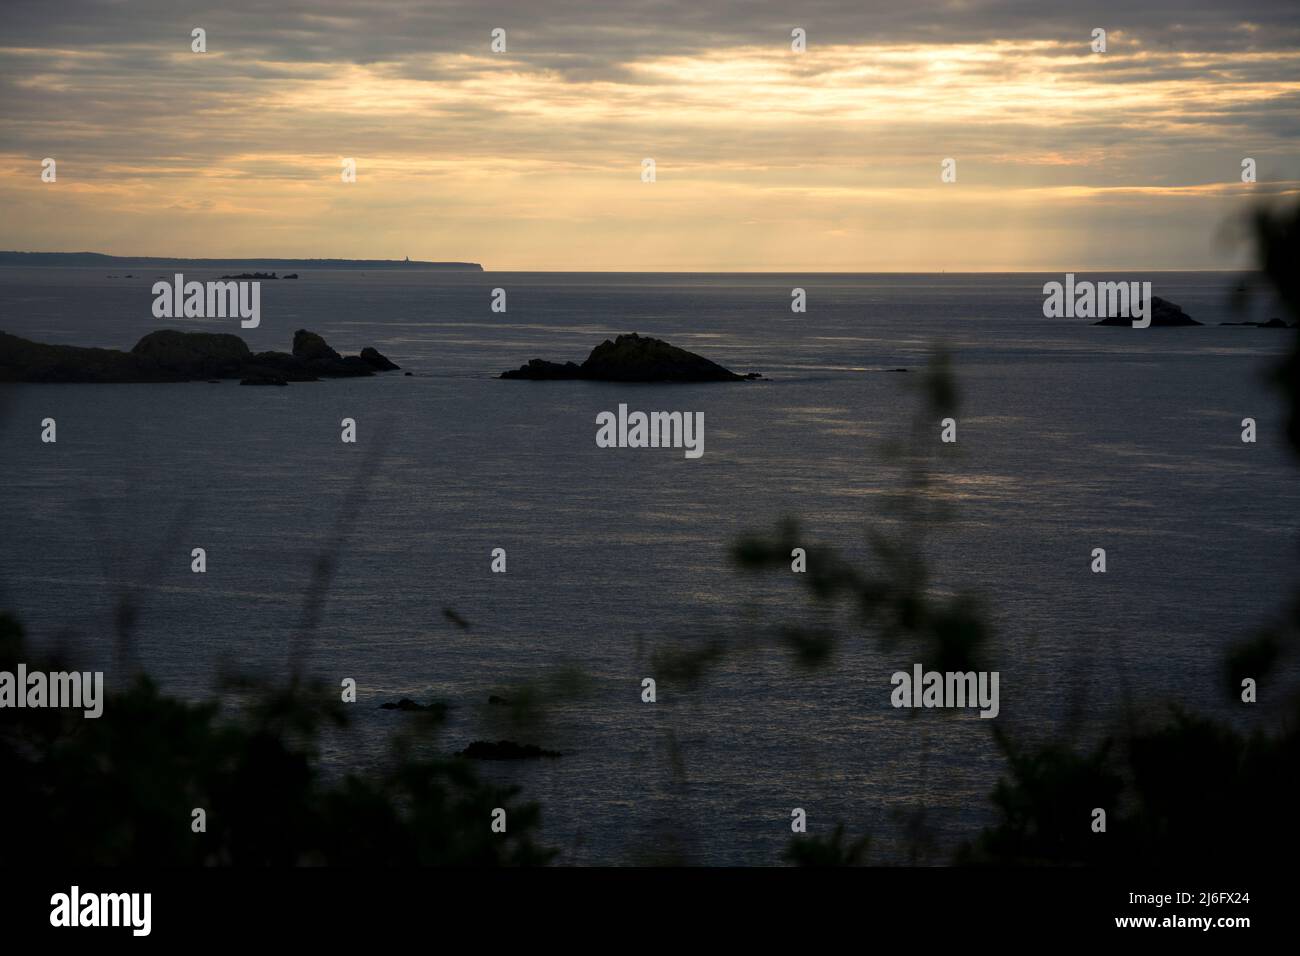 Eindrückliche Abendstimmung bei der Ile Besnard im Norden der Bretagne Foto de stock